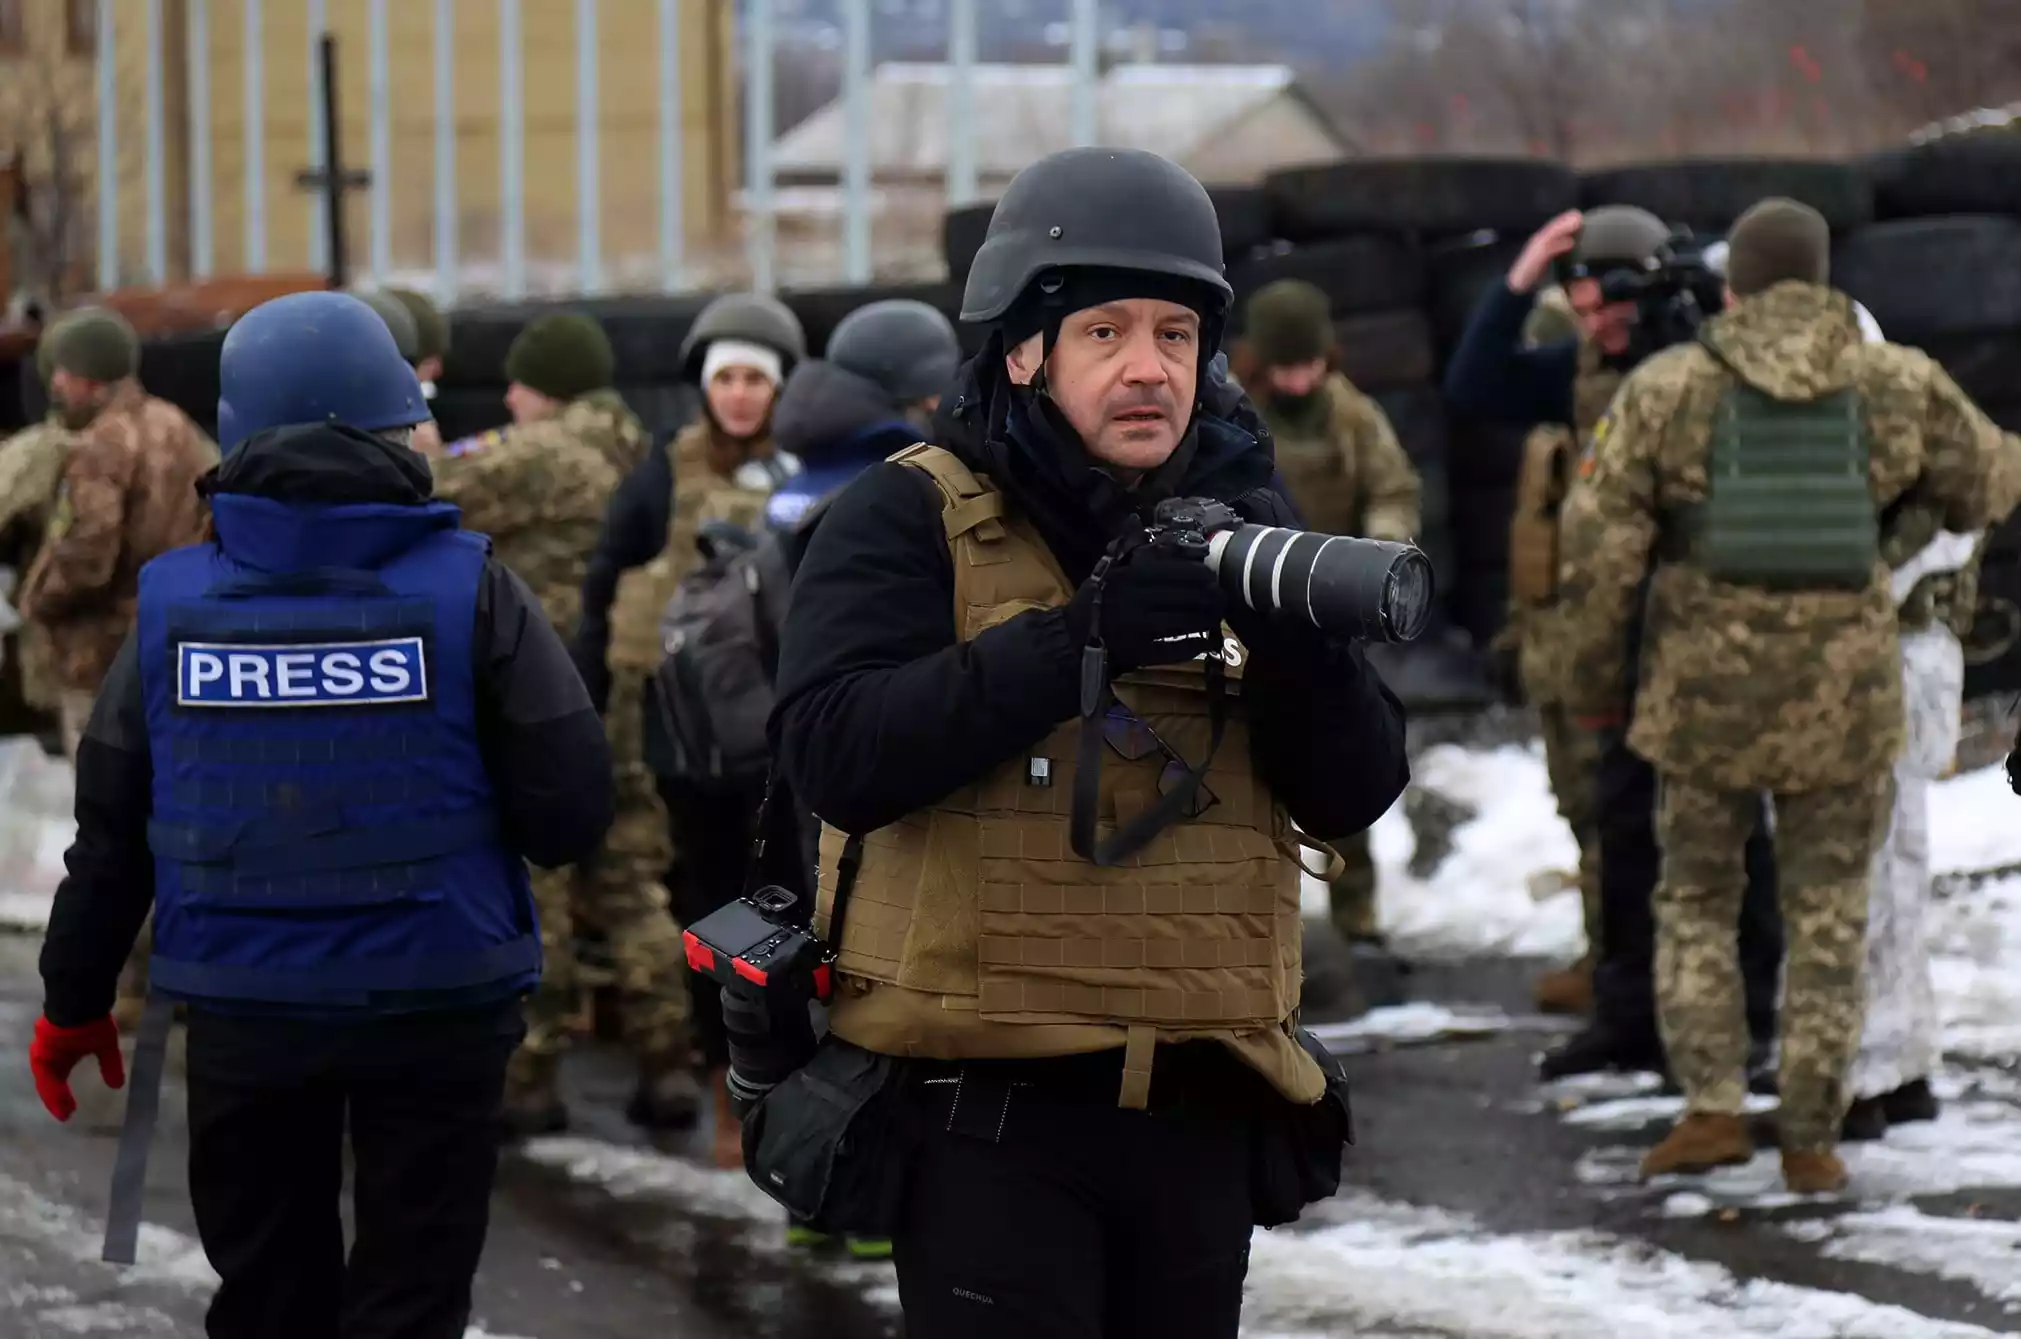 Відкритий лист до медіапрофесіоналів, які висвітлюють вторгнення Росії в Україну